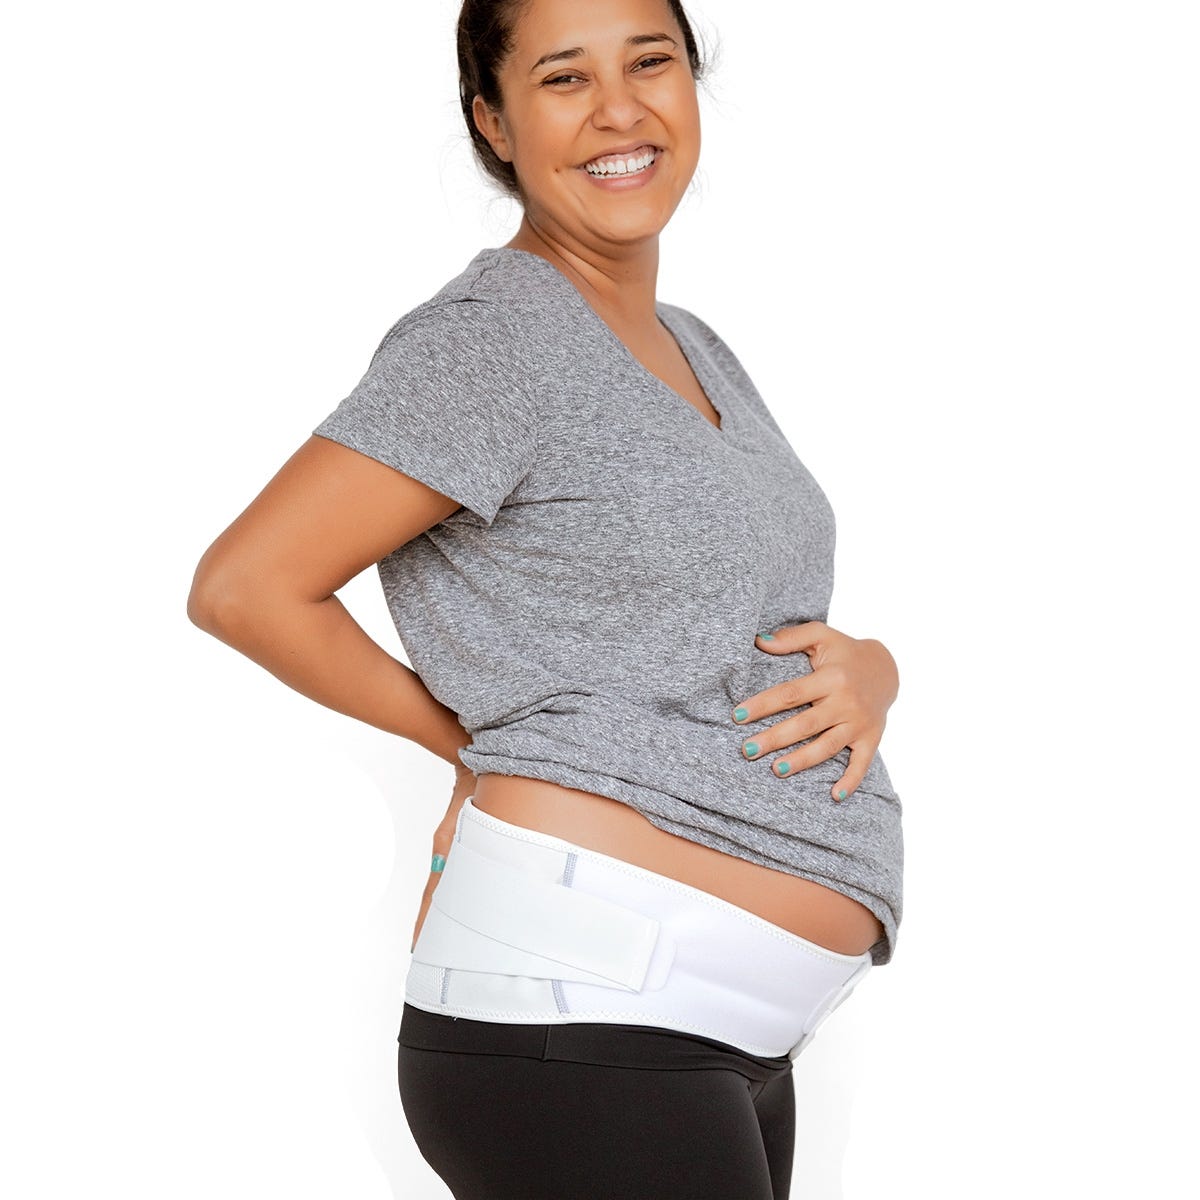 Maternity Support Belt & back Brace size 2X-Large FDA APPROVED CE Certified 